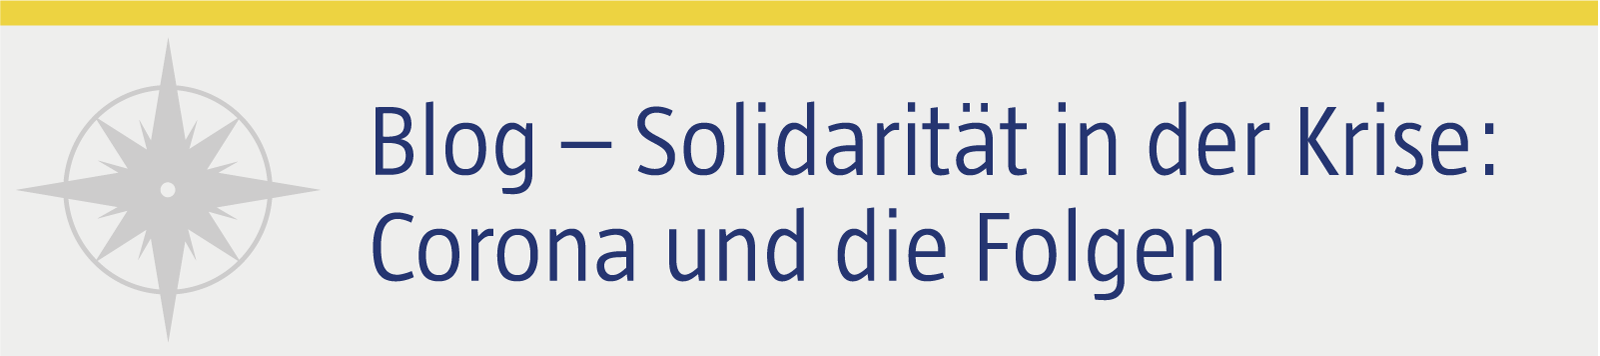 Button_Solidarität.png